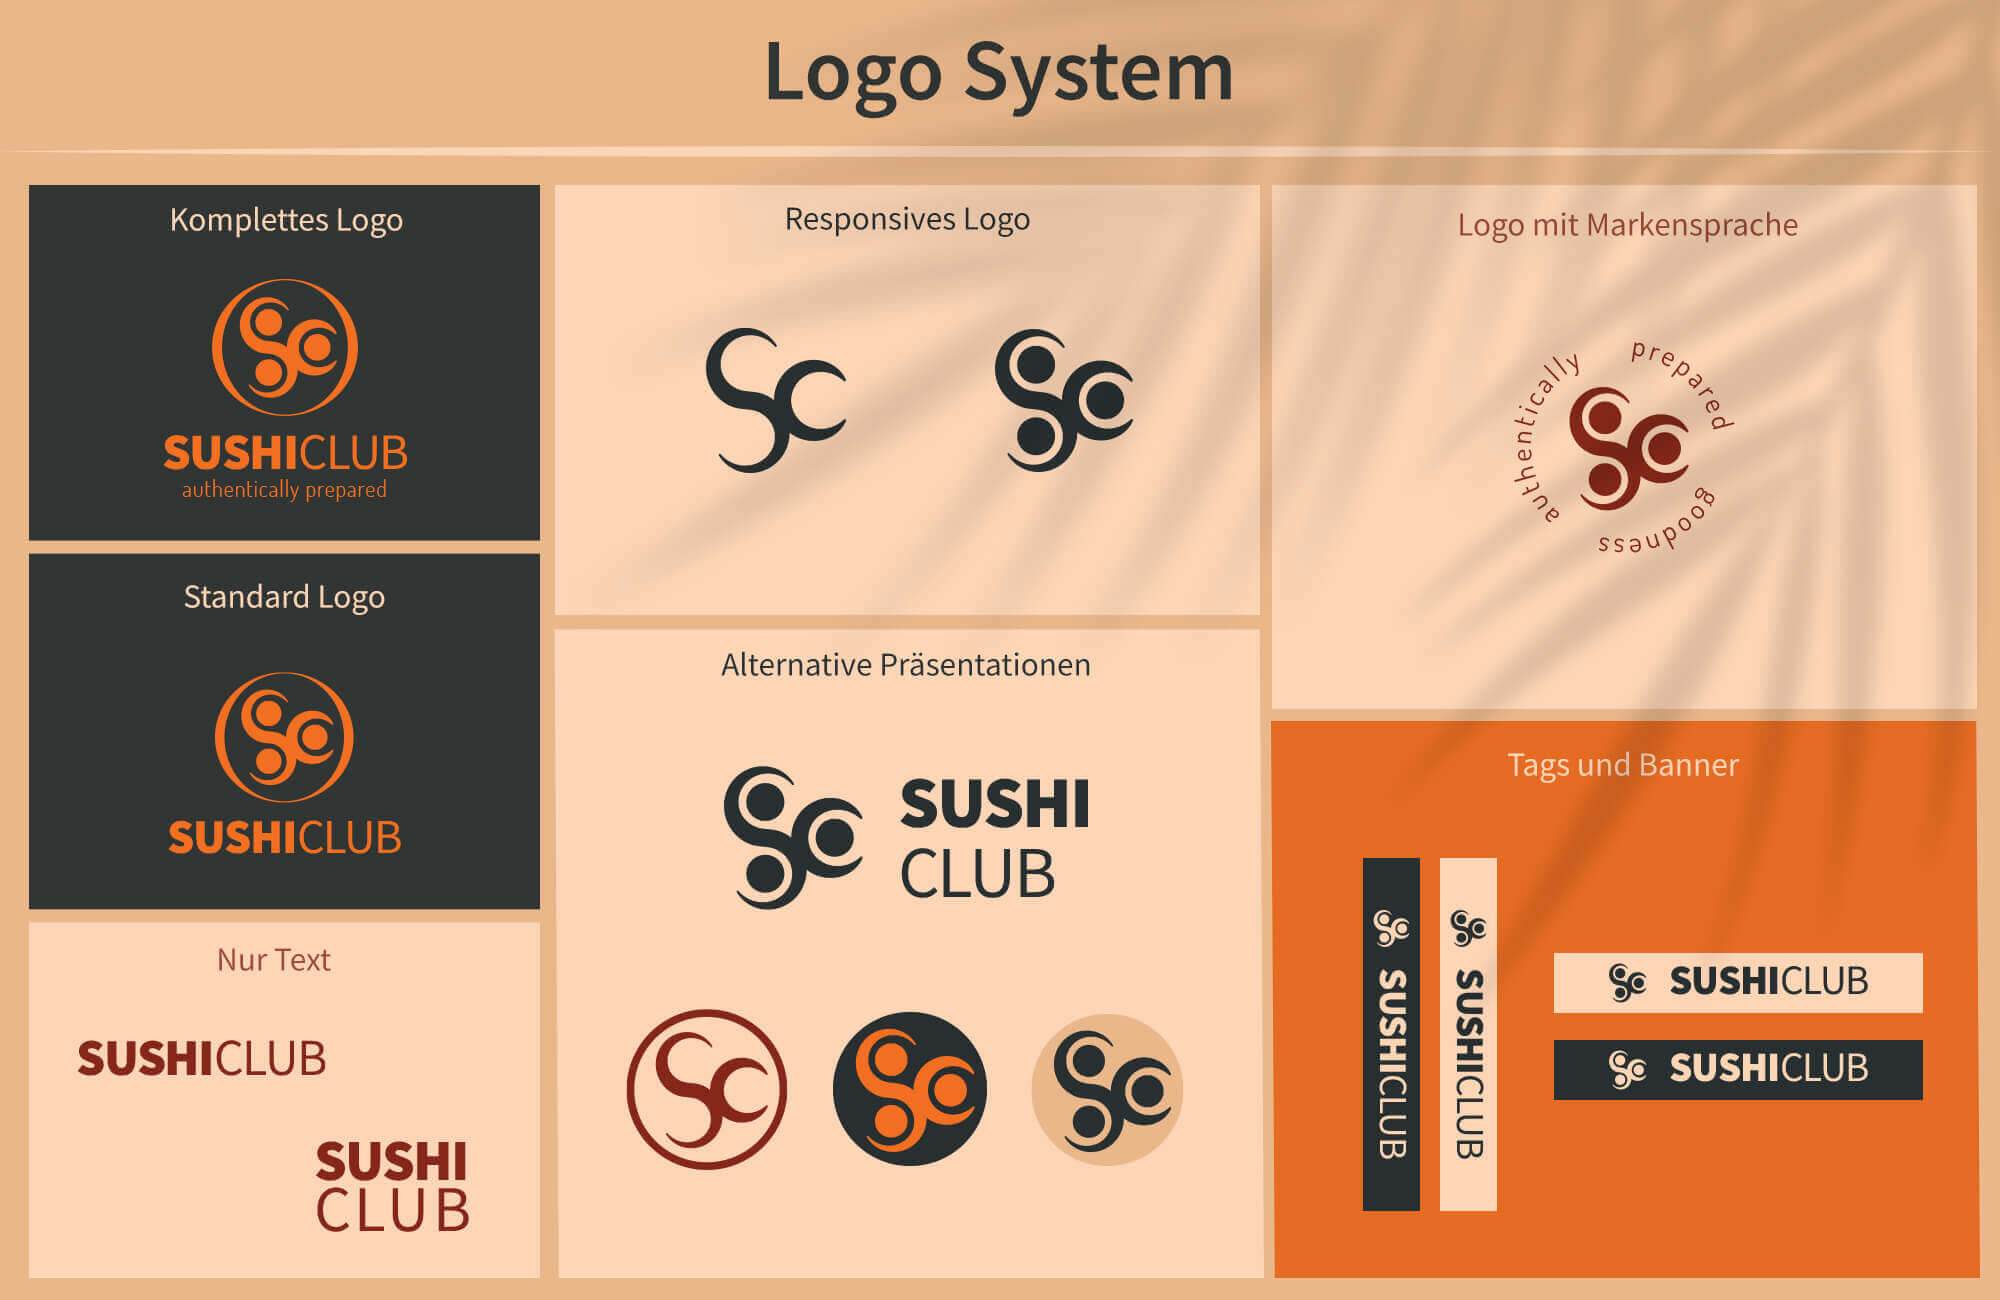 logo system